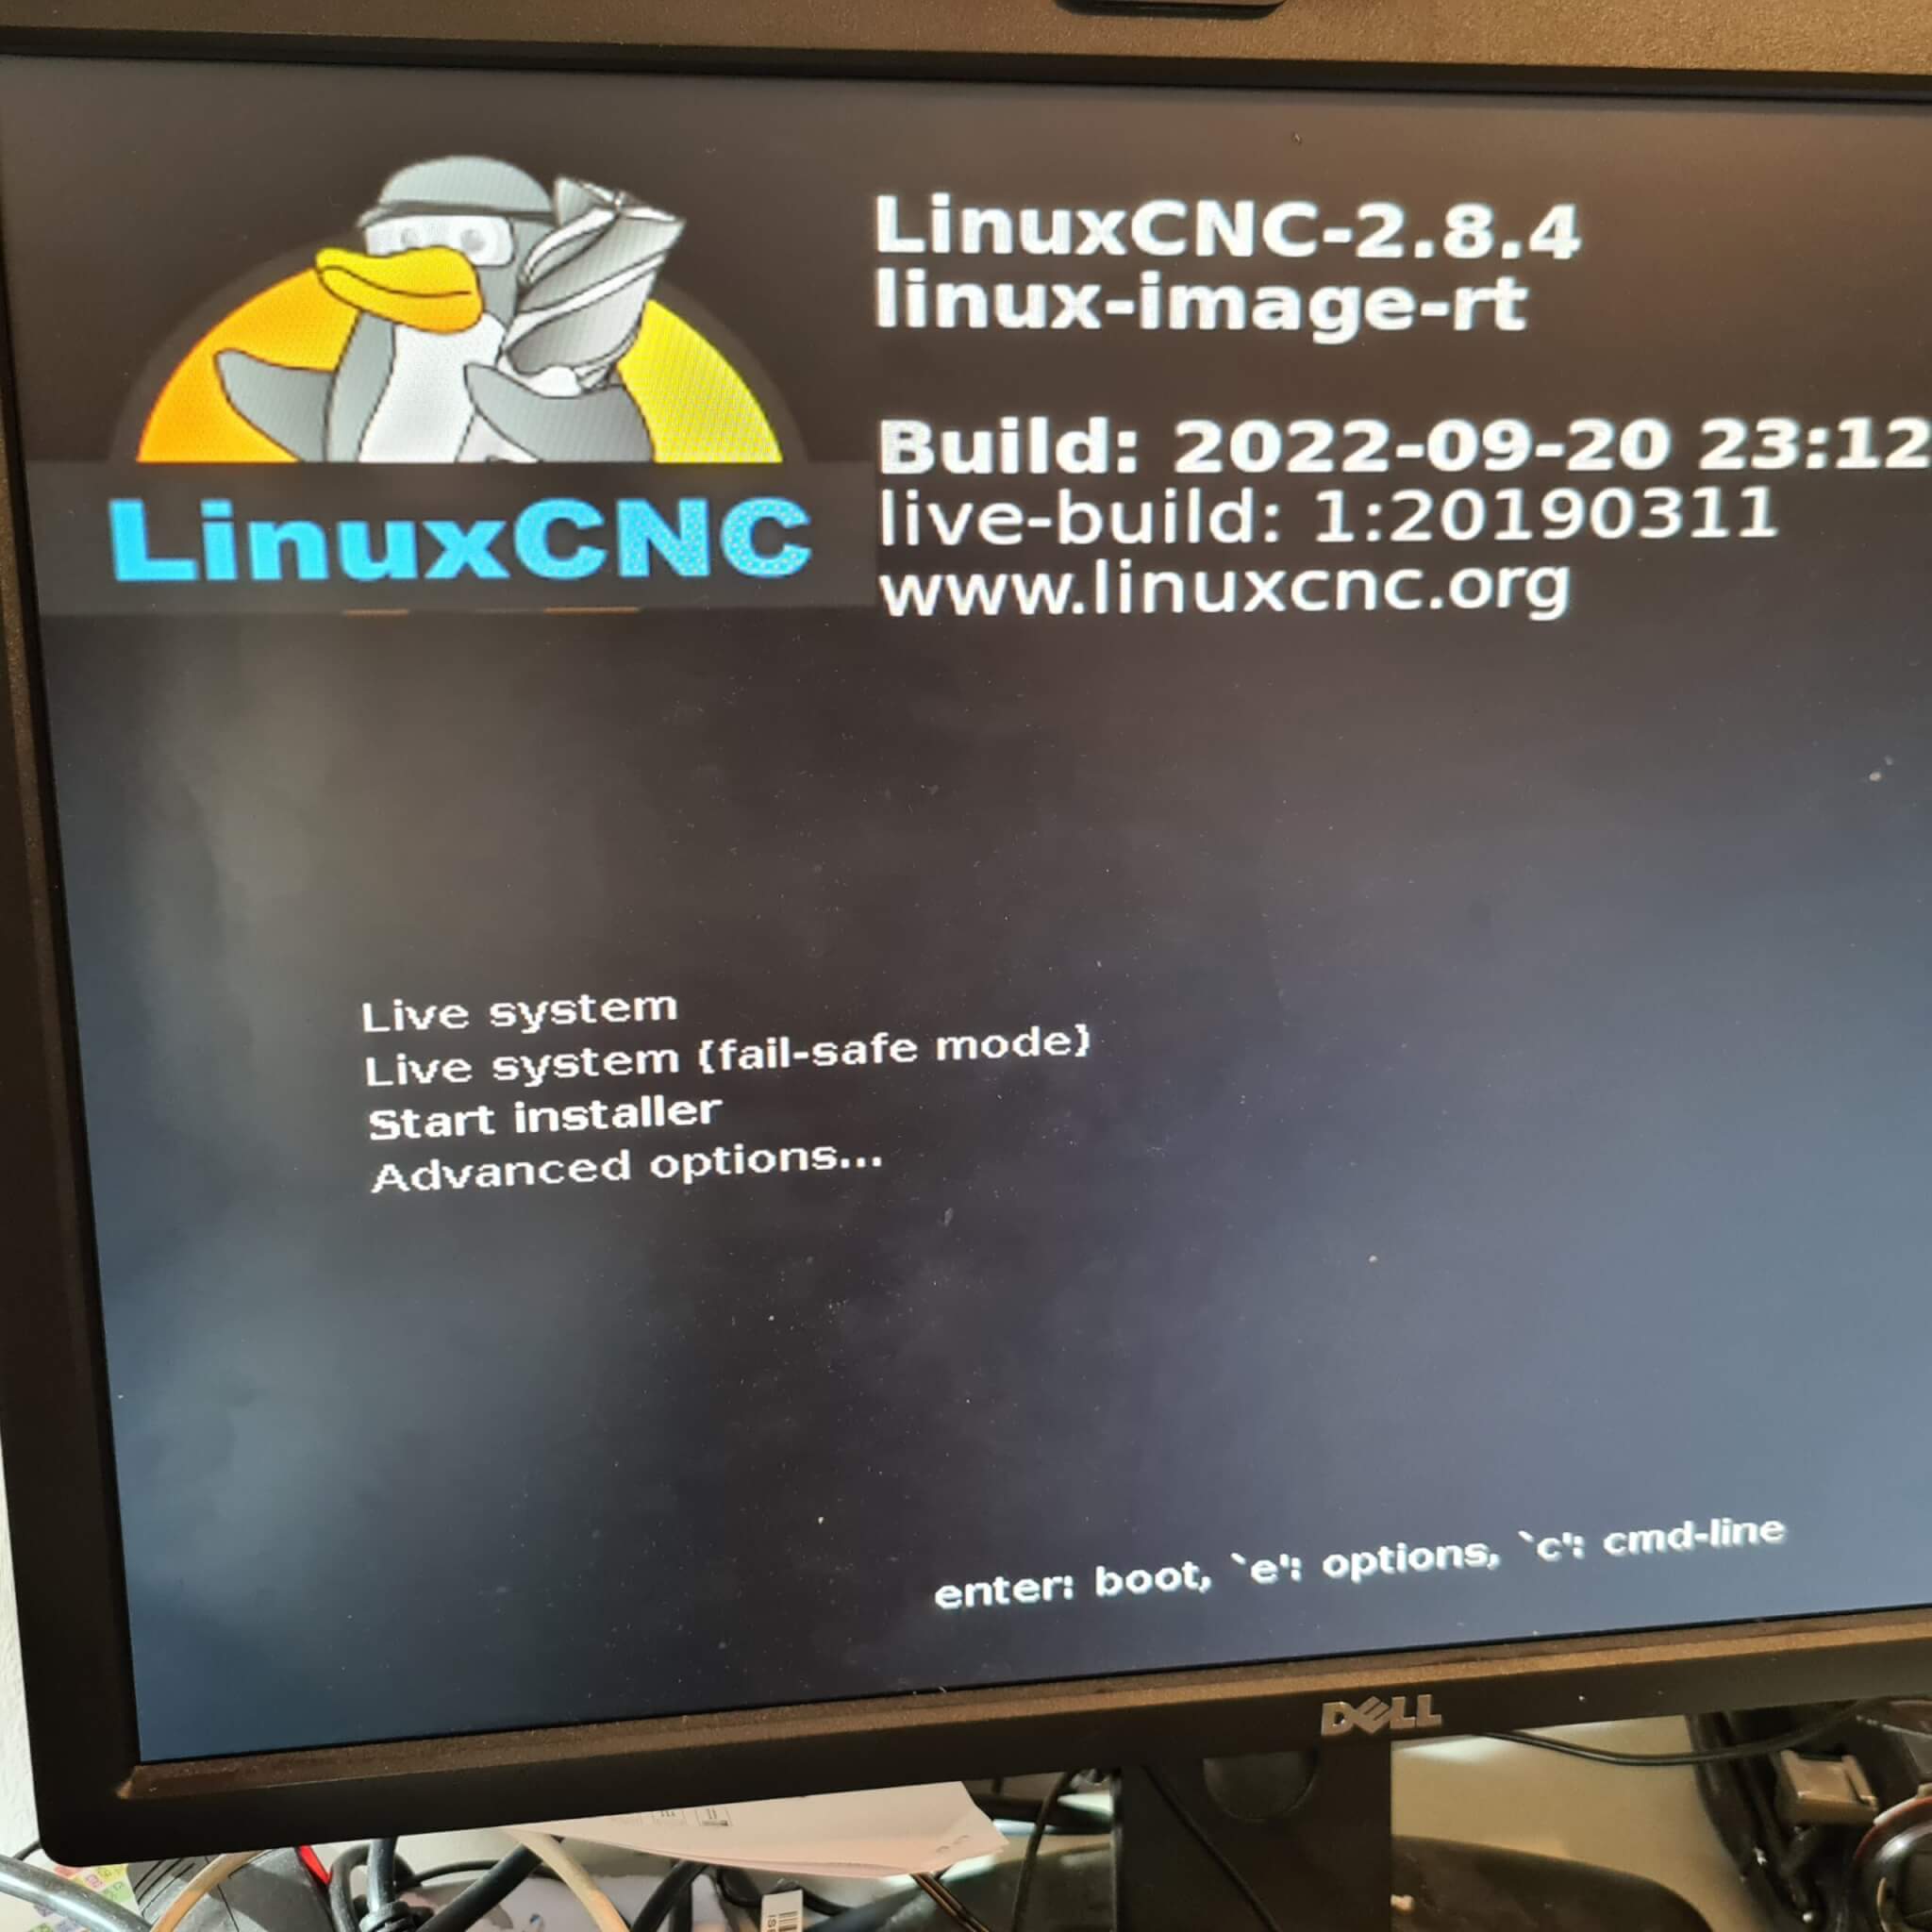 linuxcnc 2.8.4